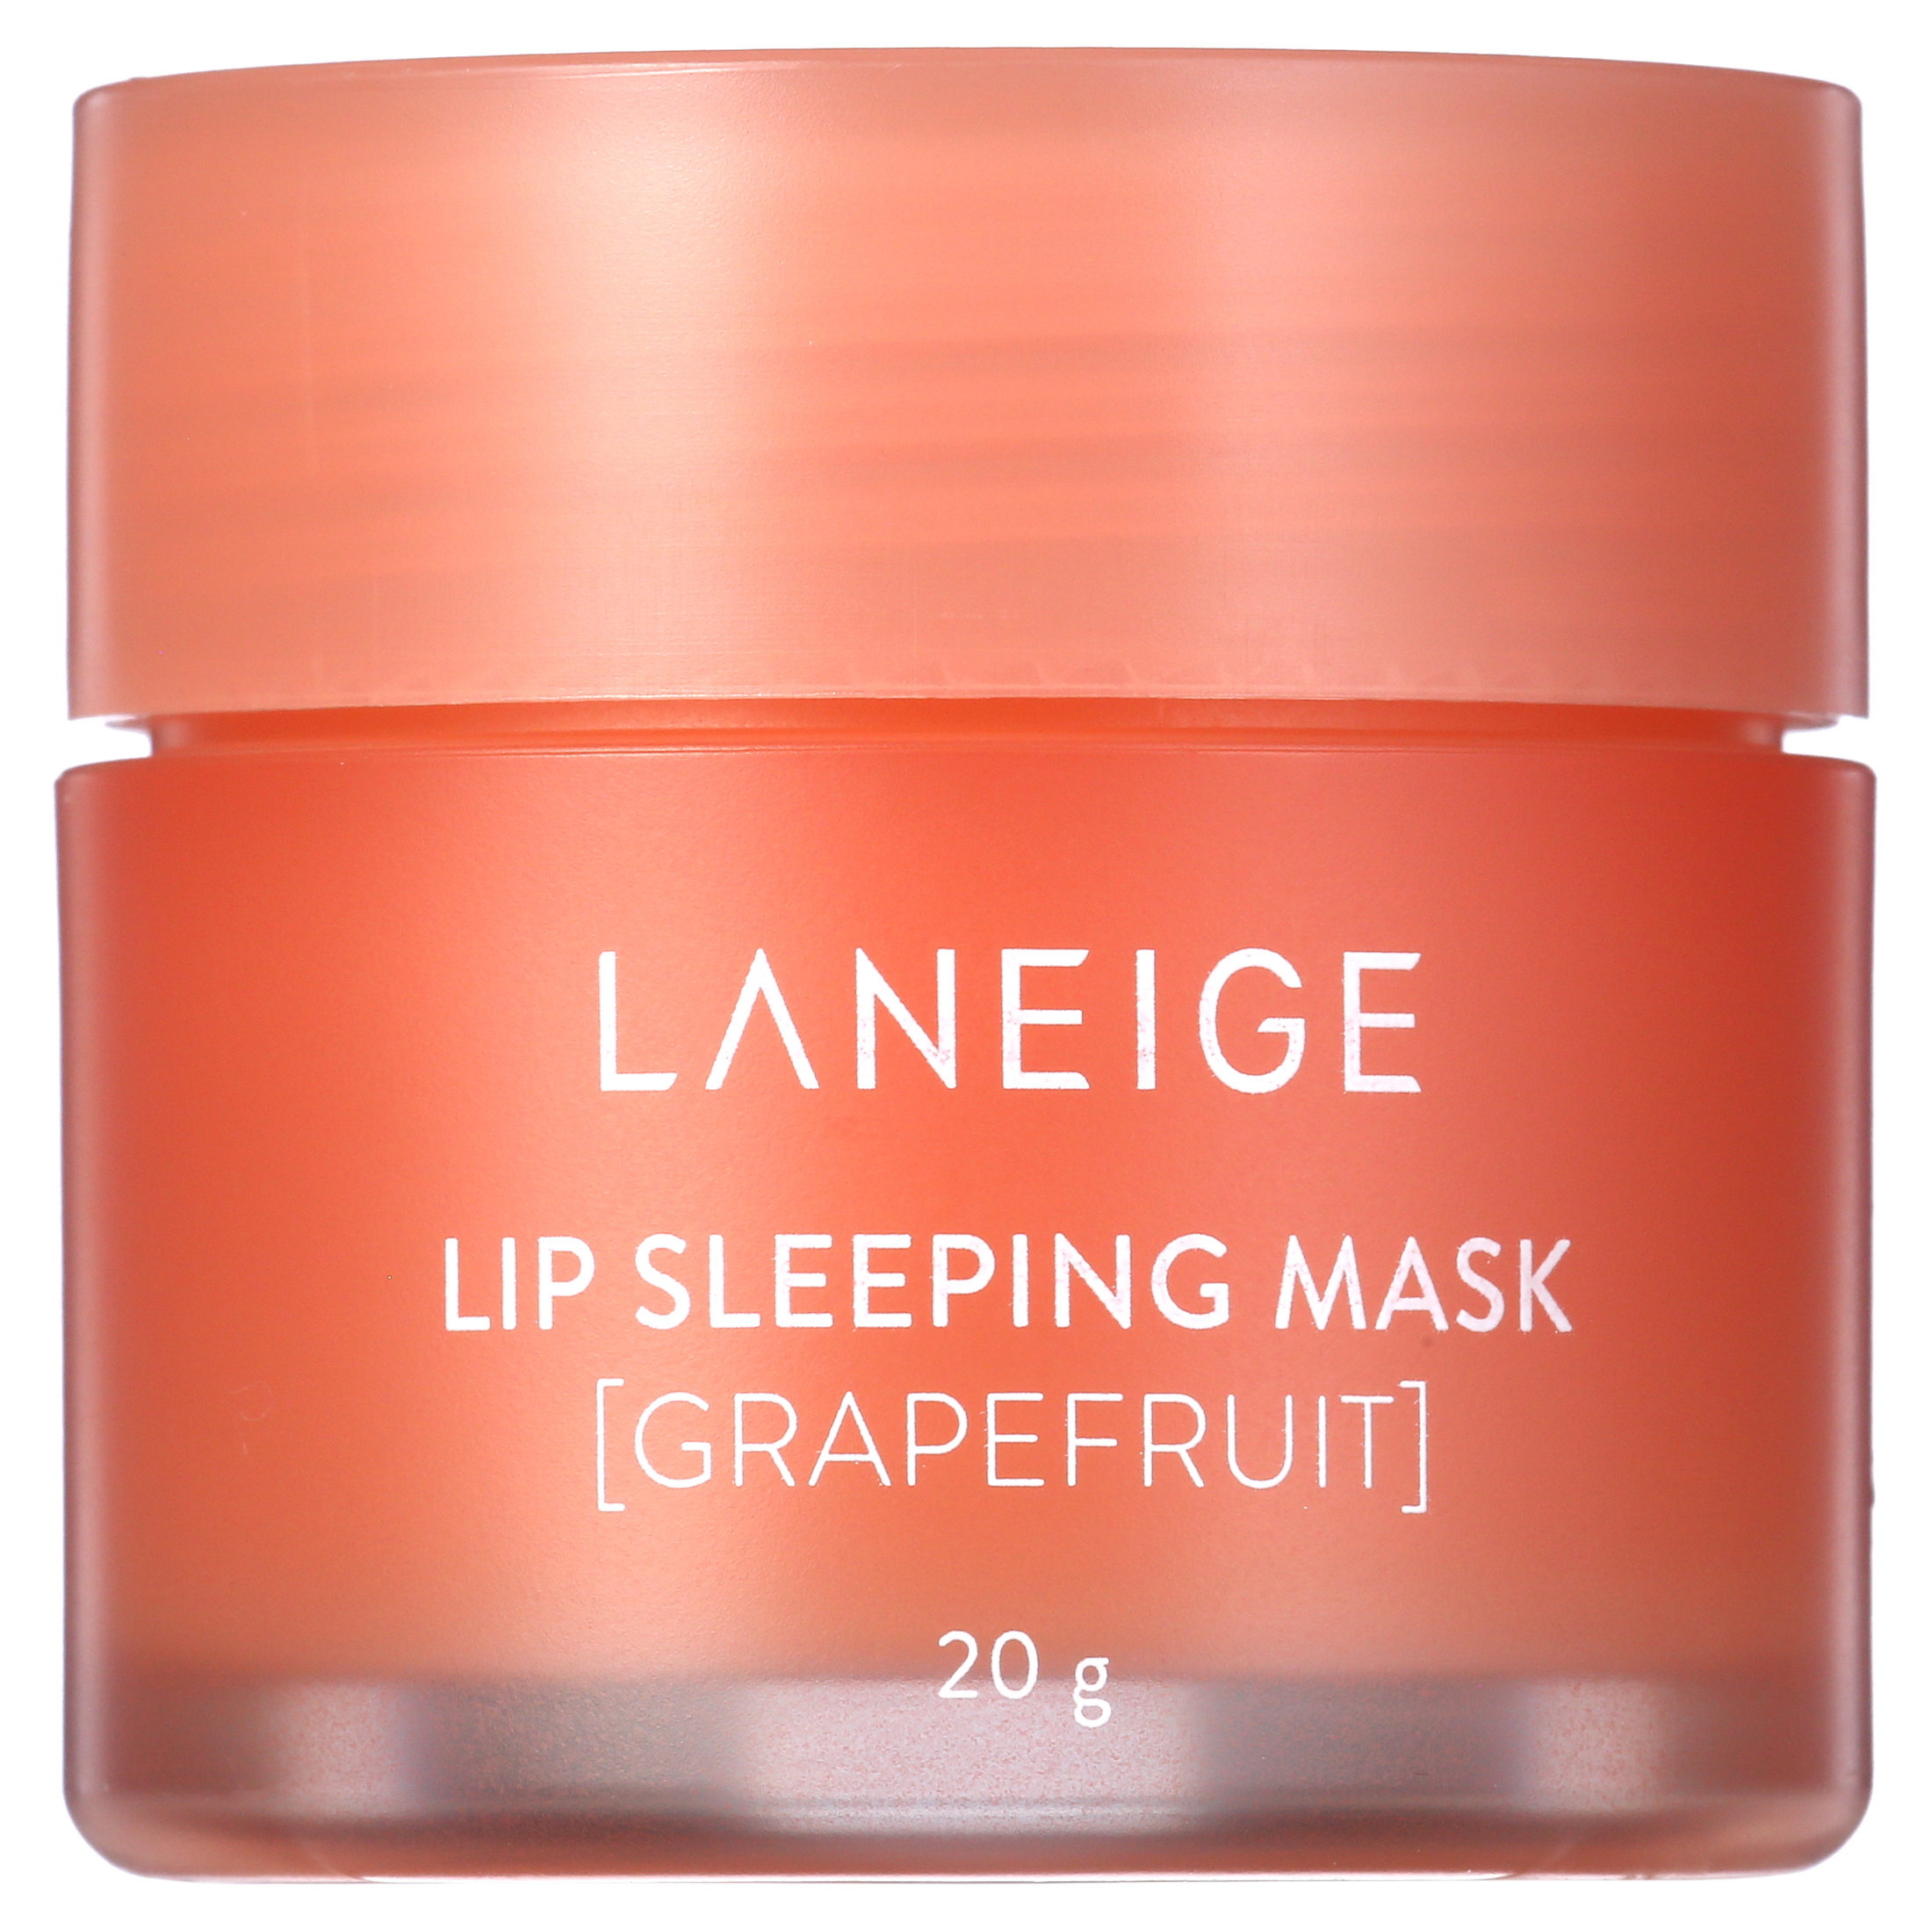 Laneige Lip Sleeping Mask Grapefruit 20g - image 1 of 6